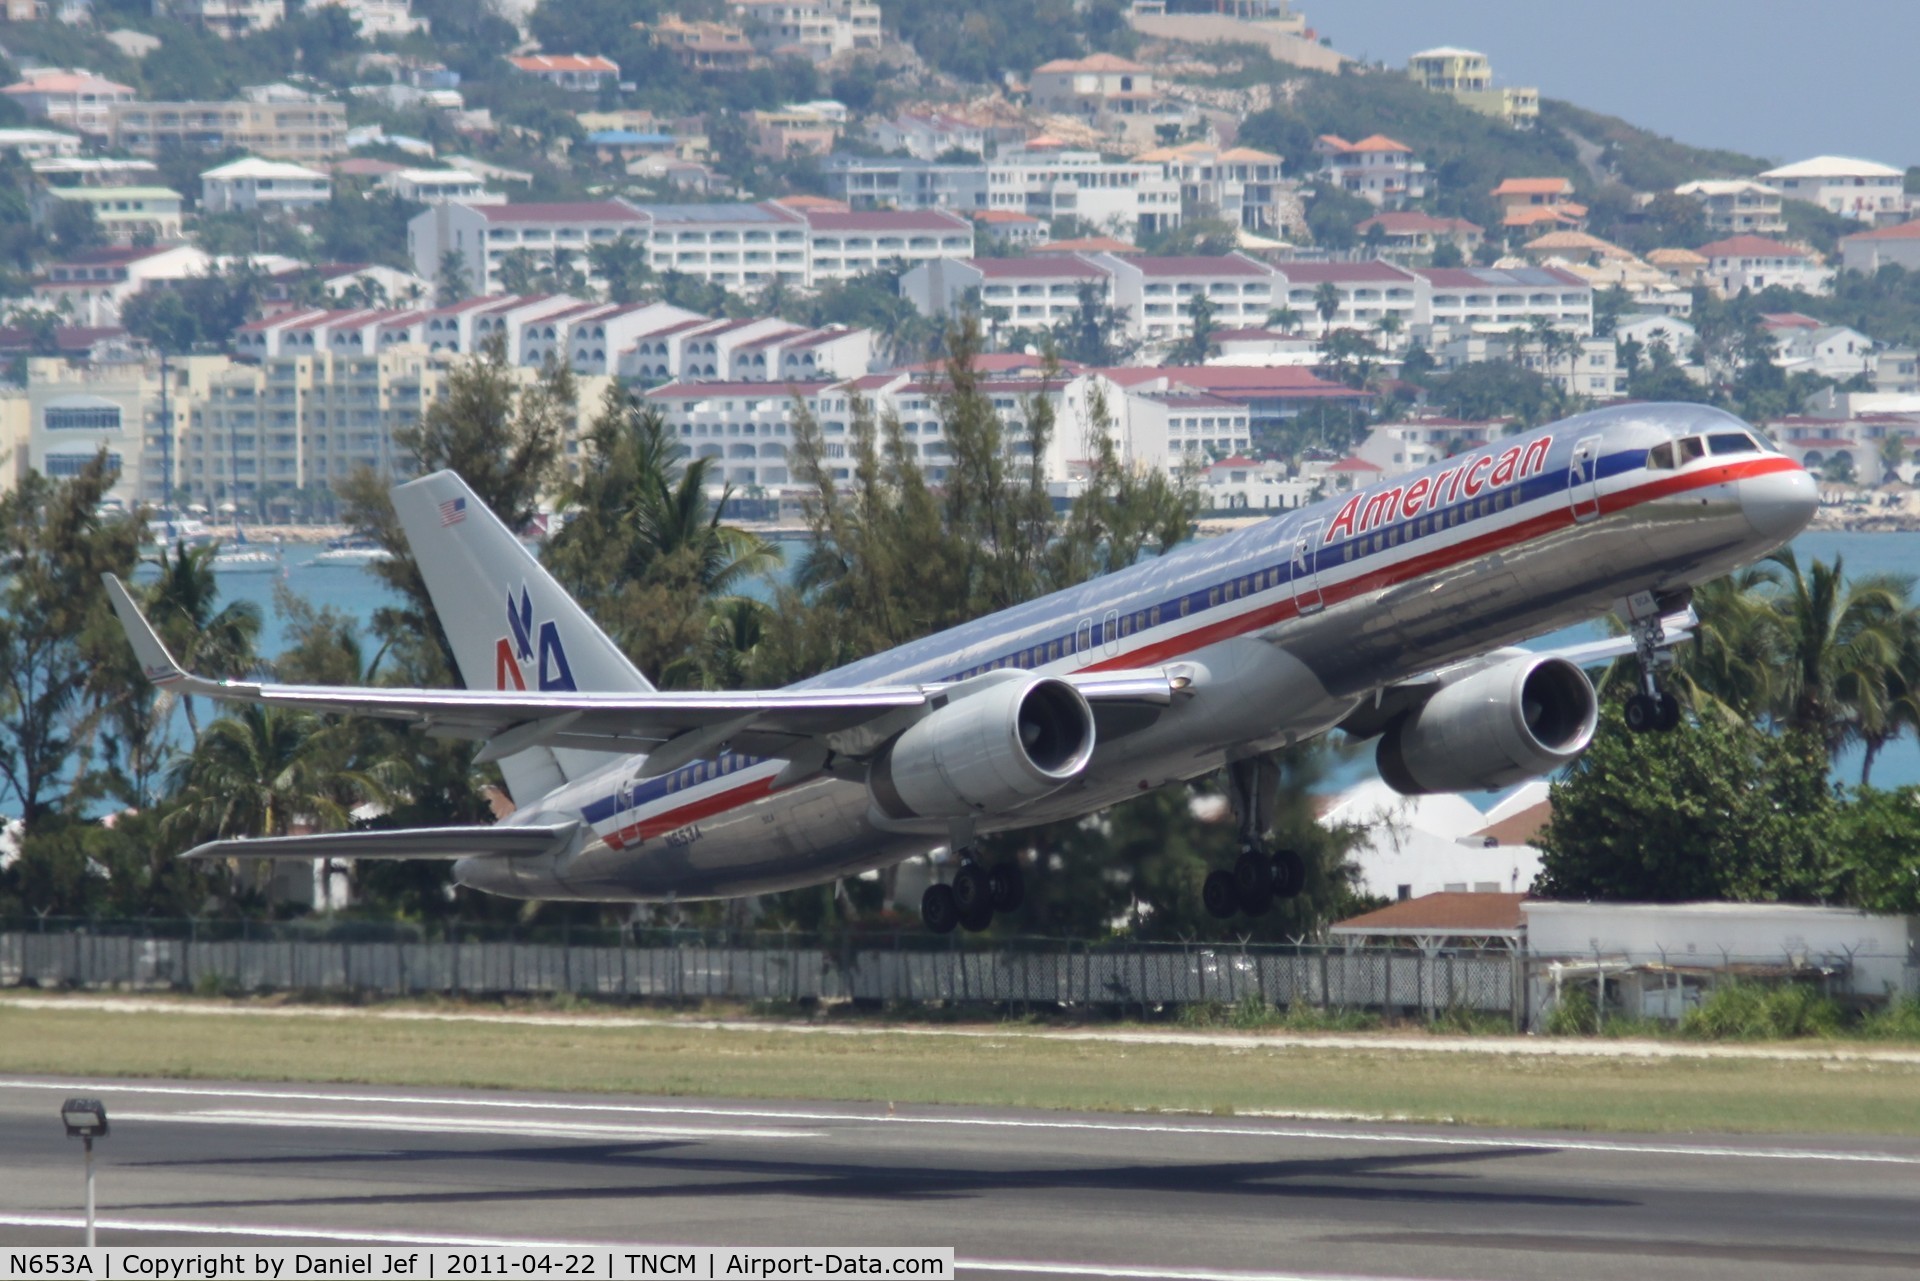 N653A, 1991 Boeing 757-223 C/N 24611, American airlines N653A departing TNCM runway 28